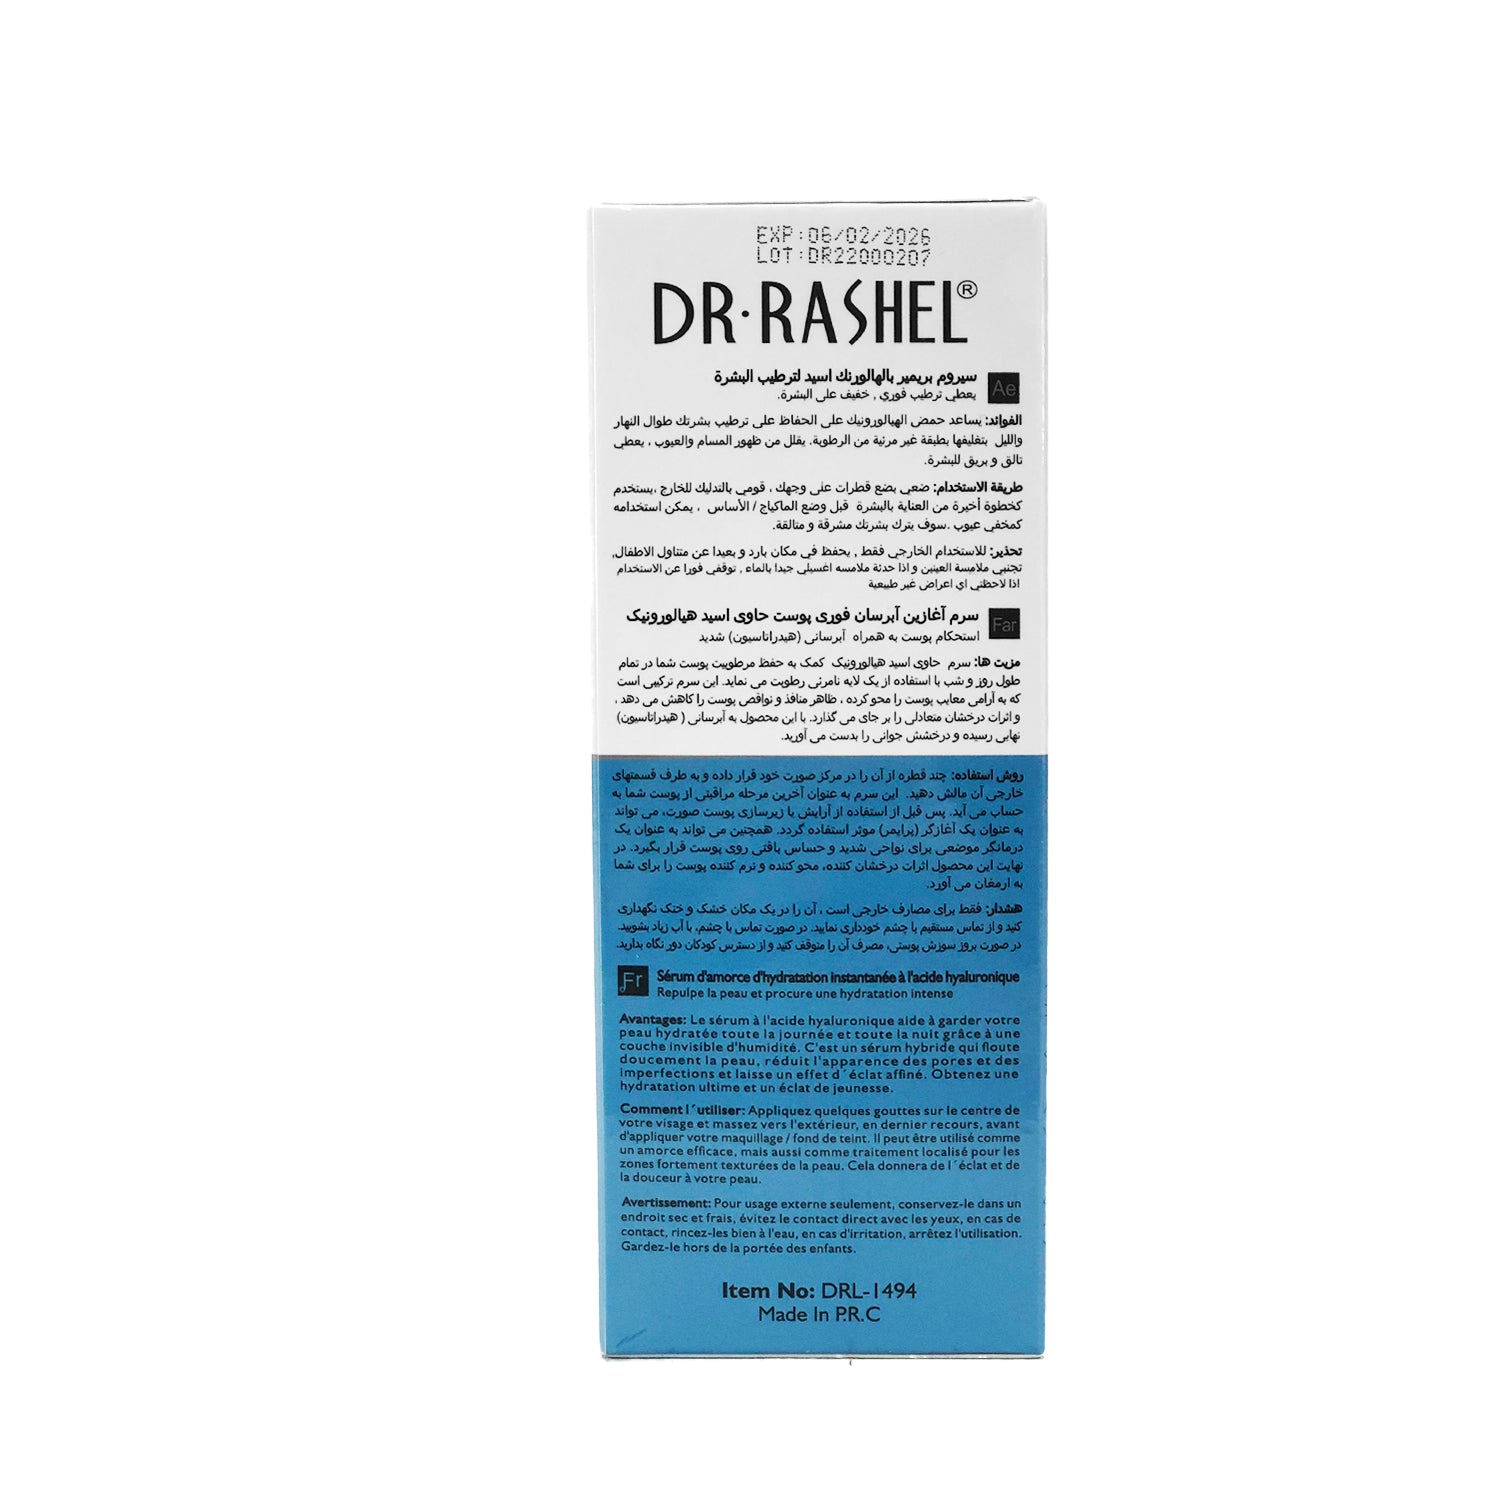 Serum Hialuronico - Dr. Rashel 100ml